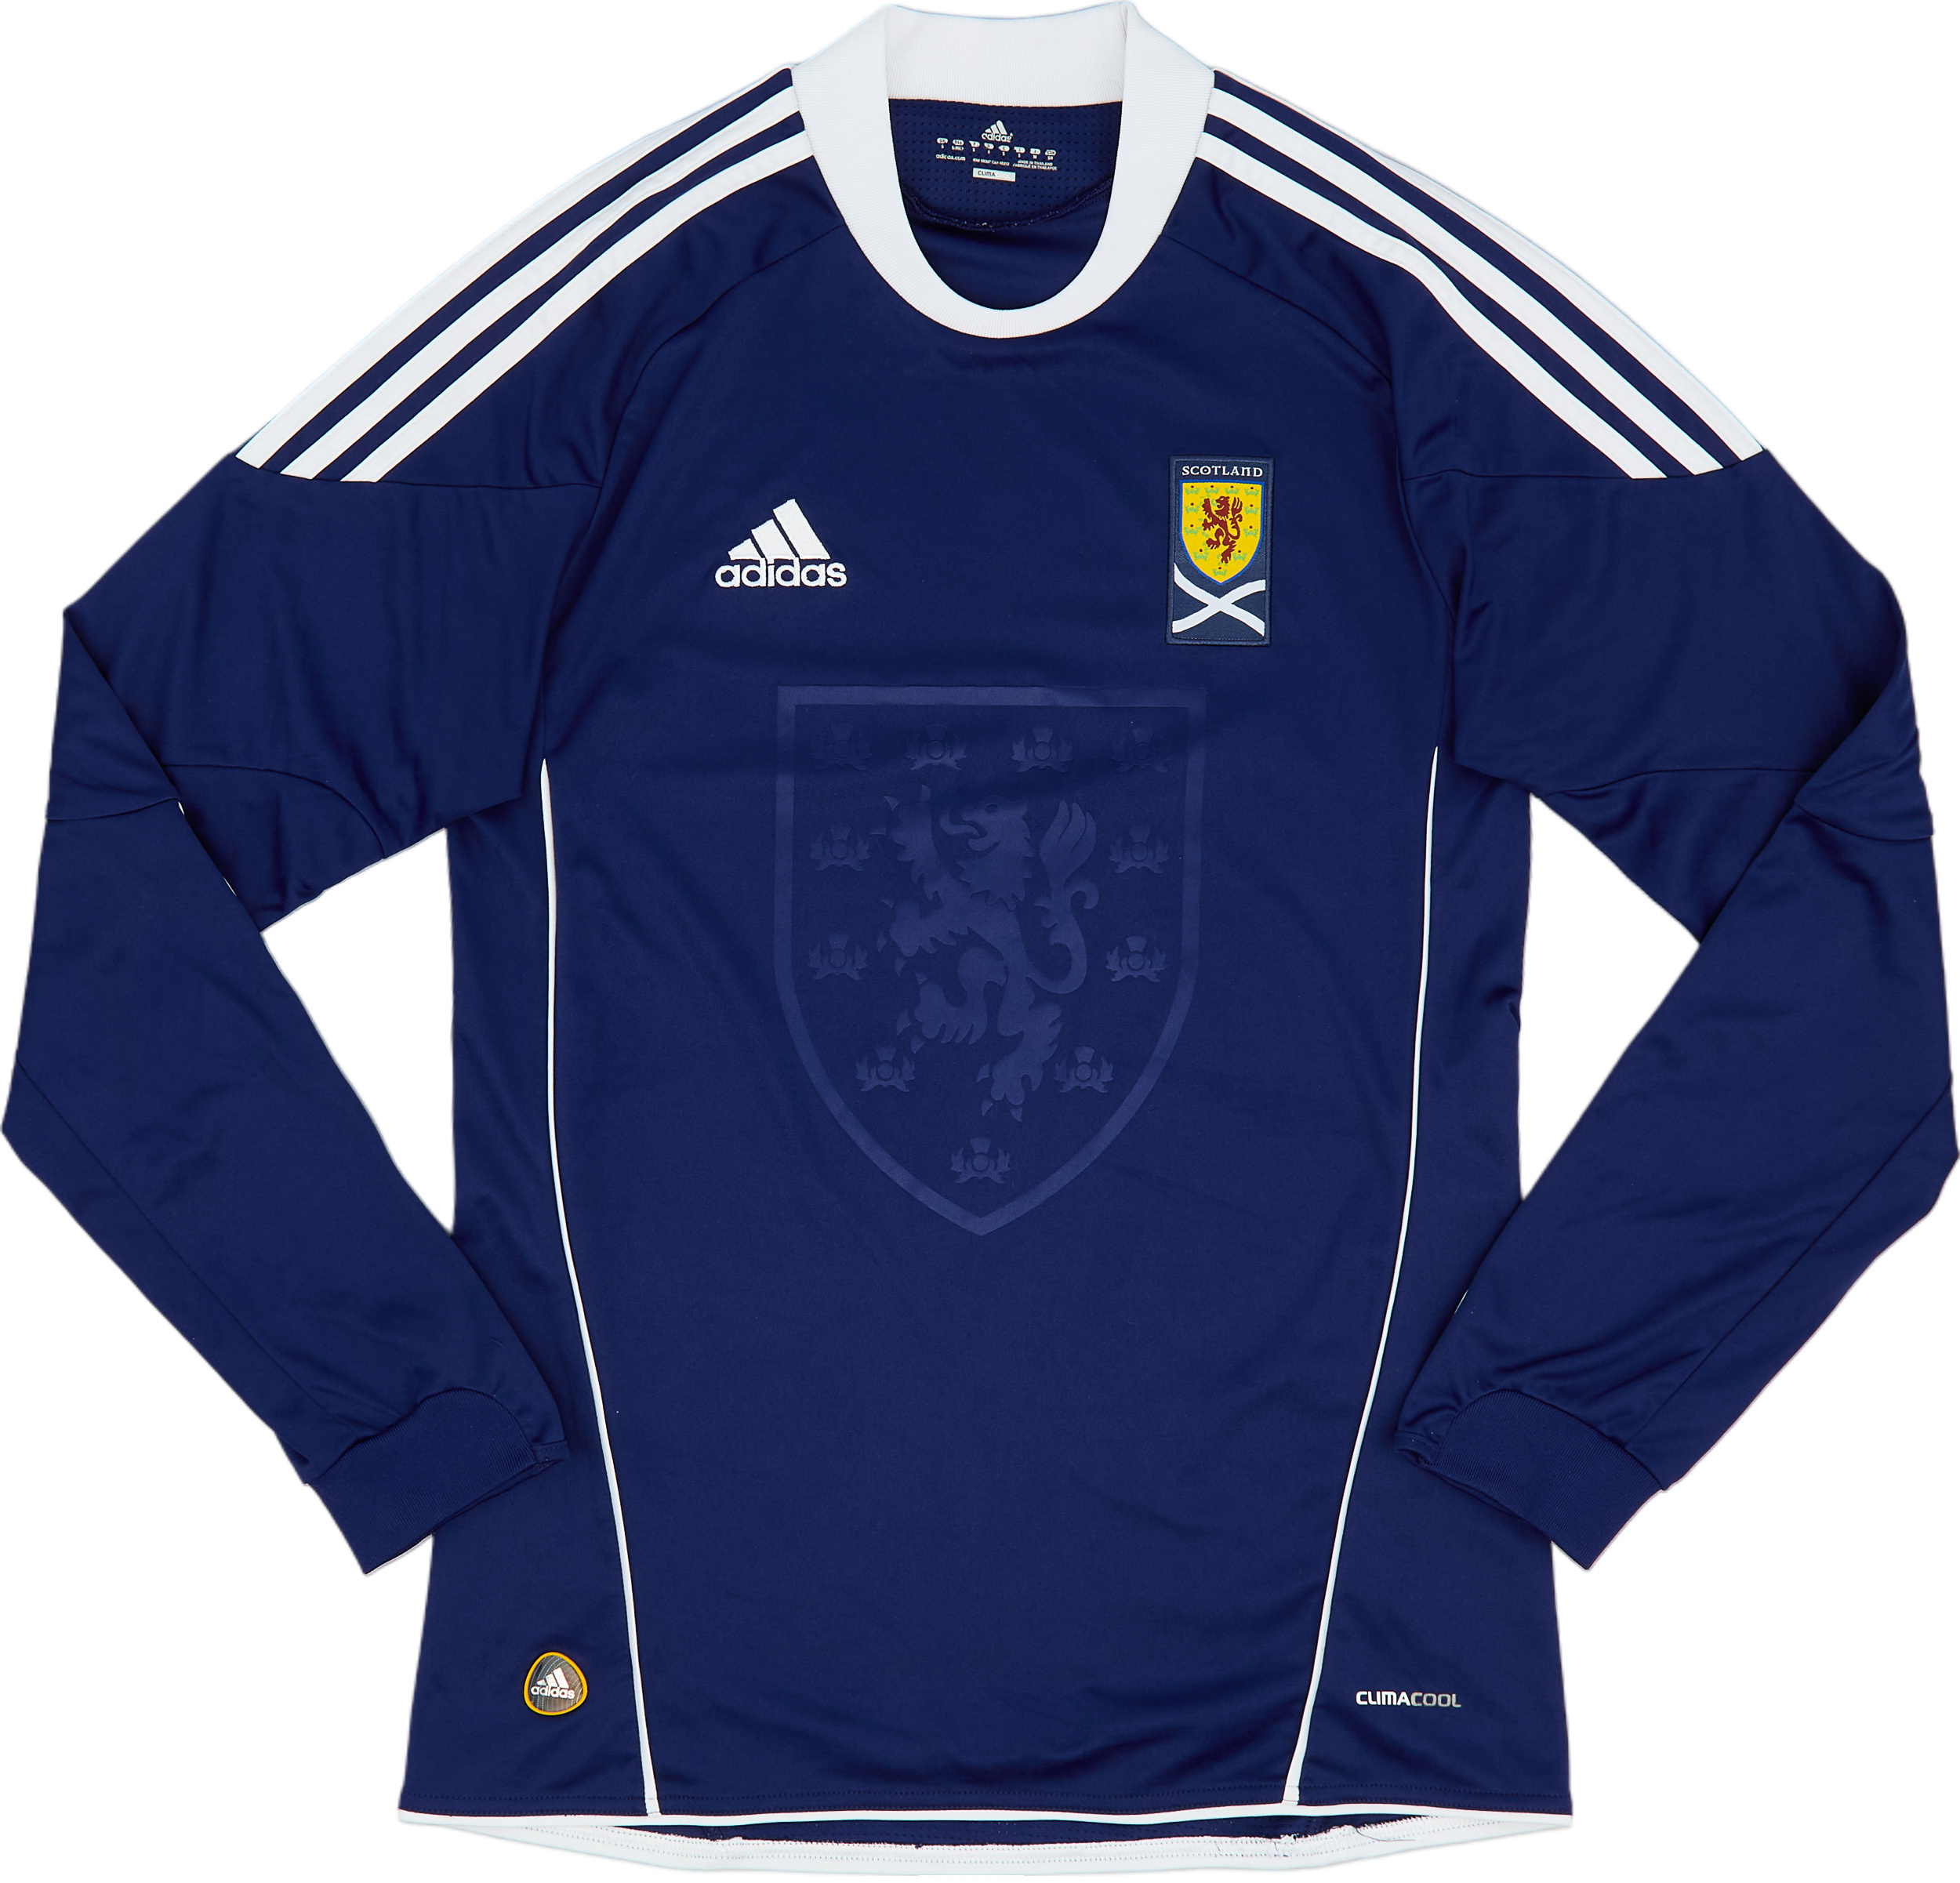 2010-11 Scotland Home Shirt - 9/10 - ()